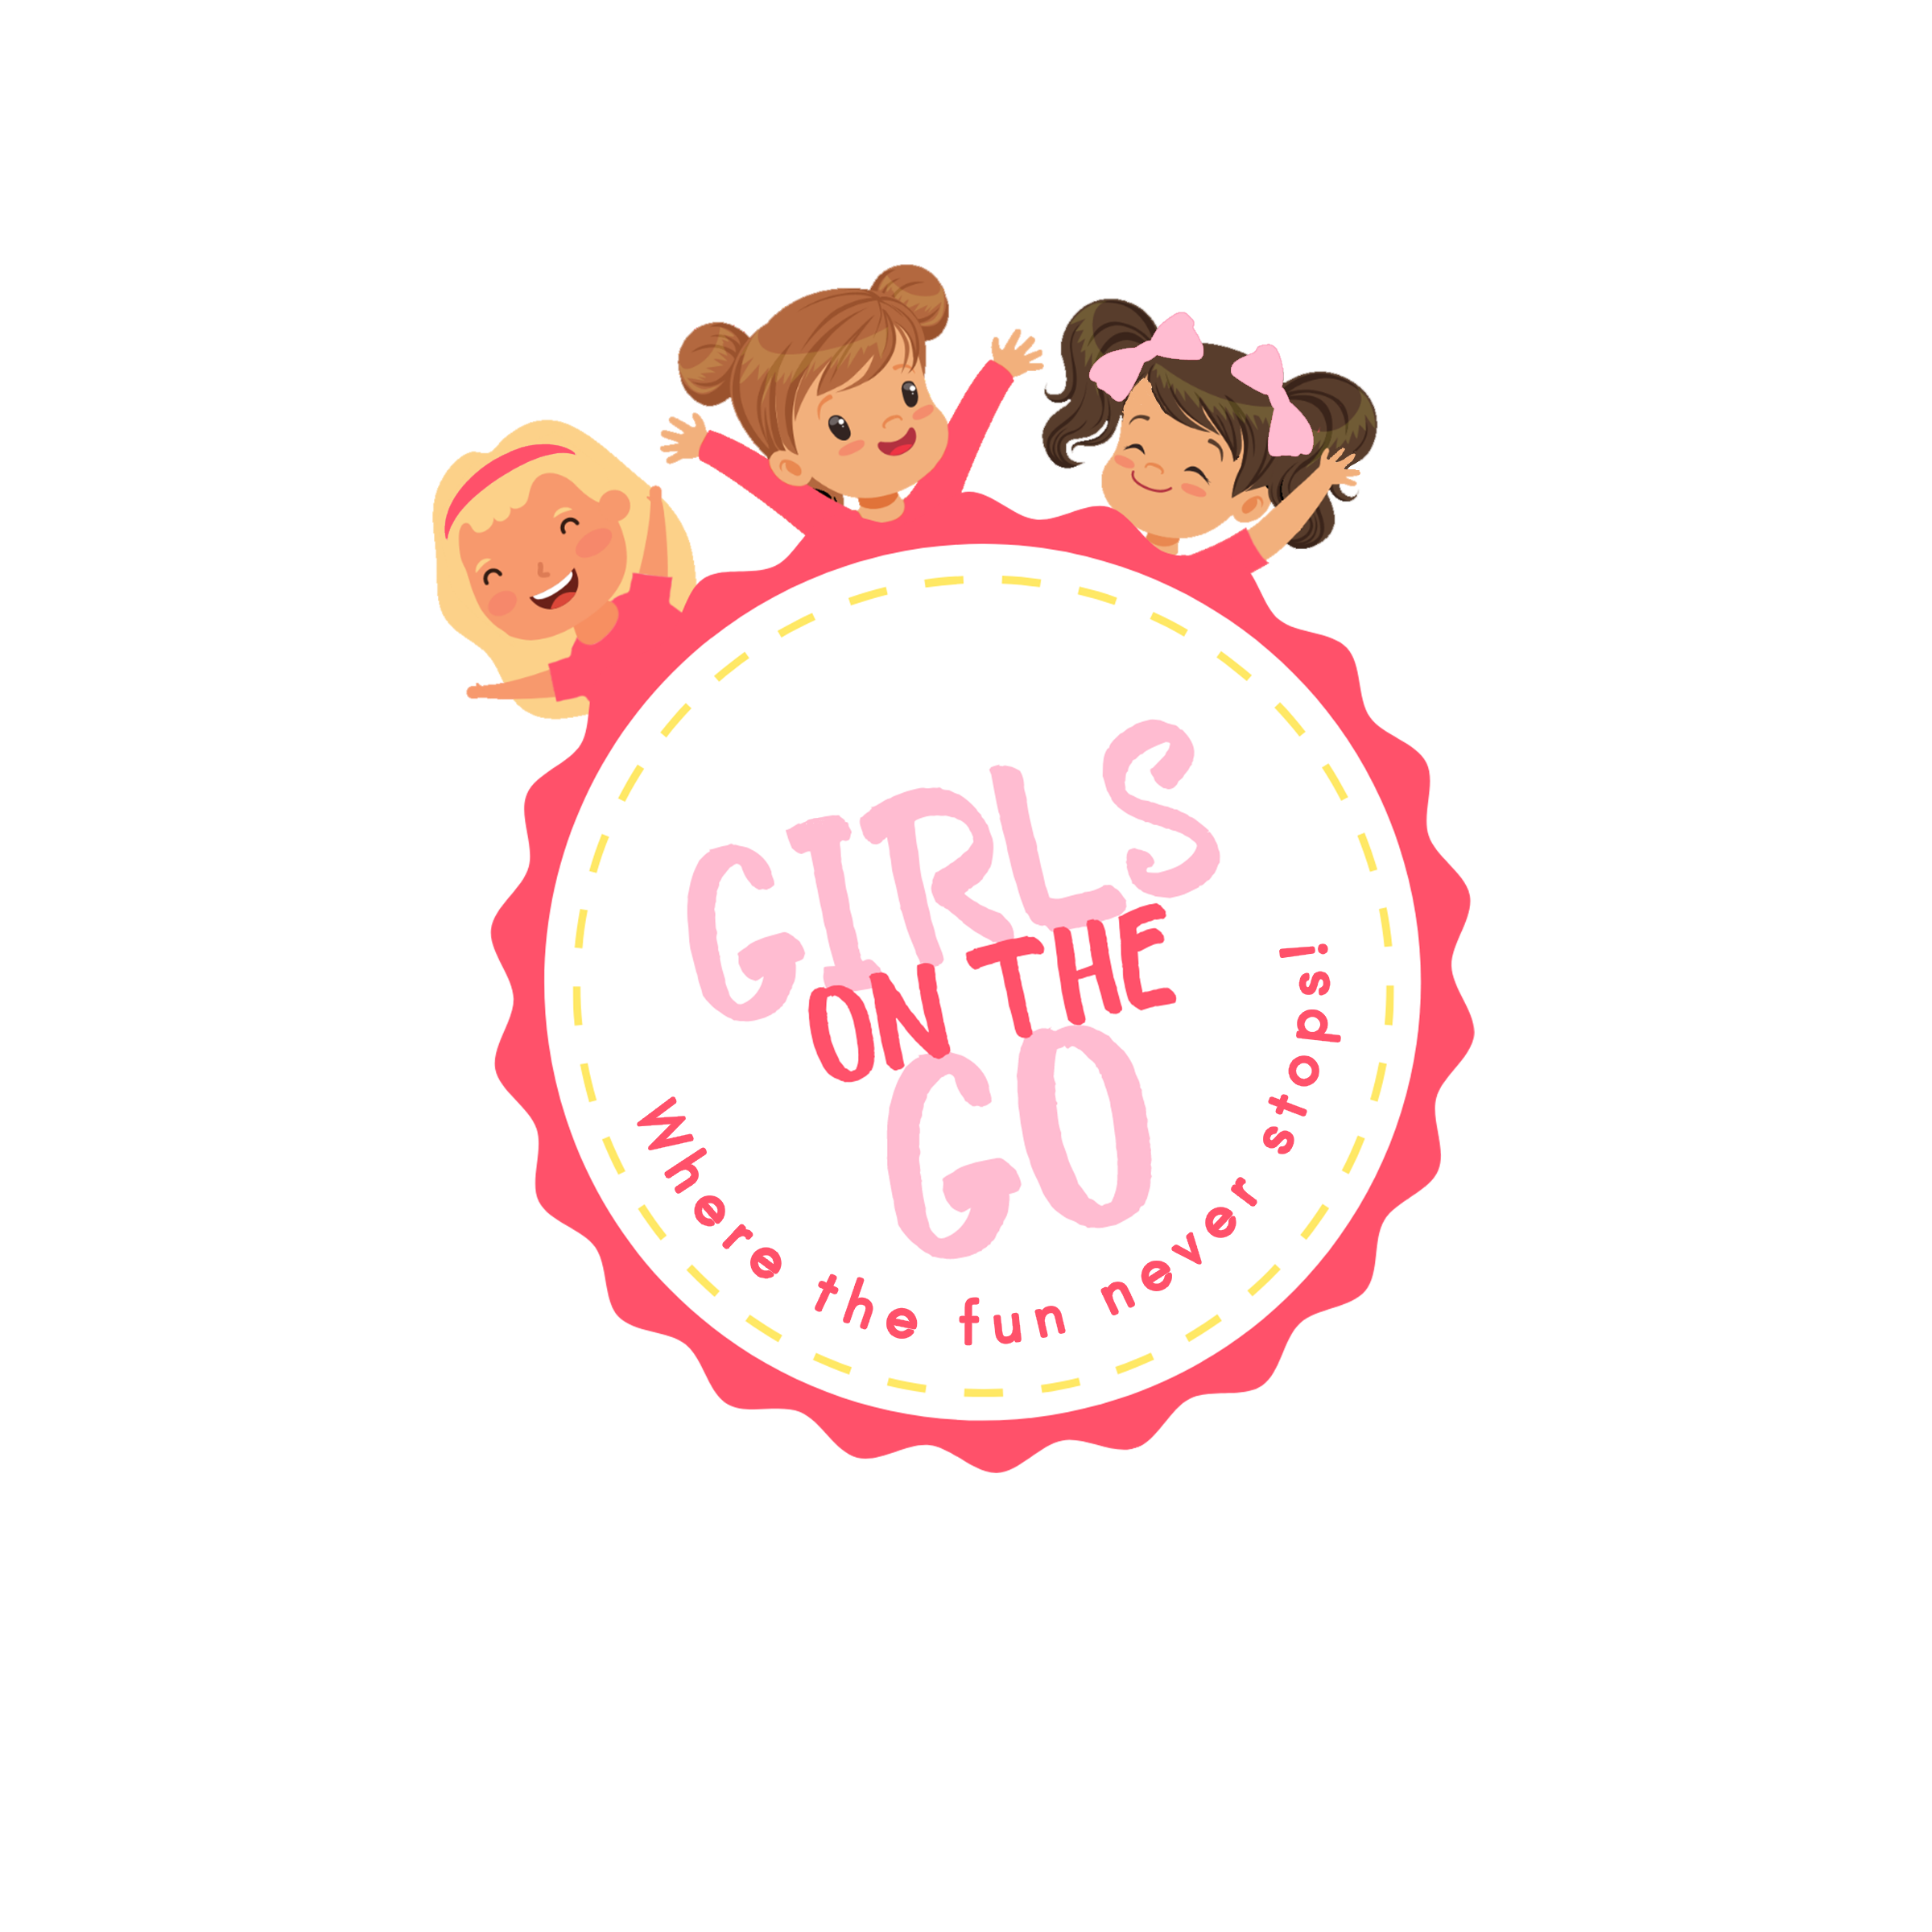 Girls on the Go logo